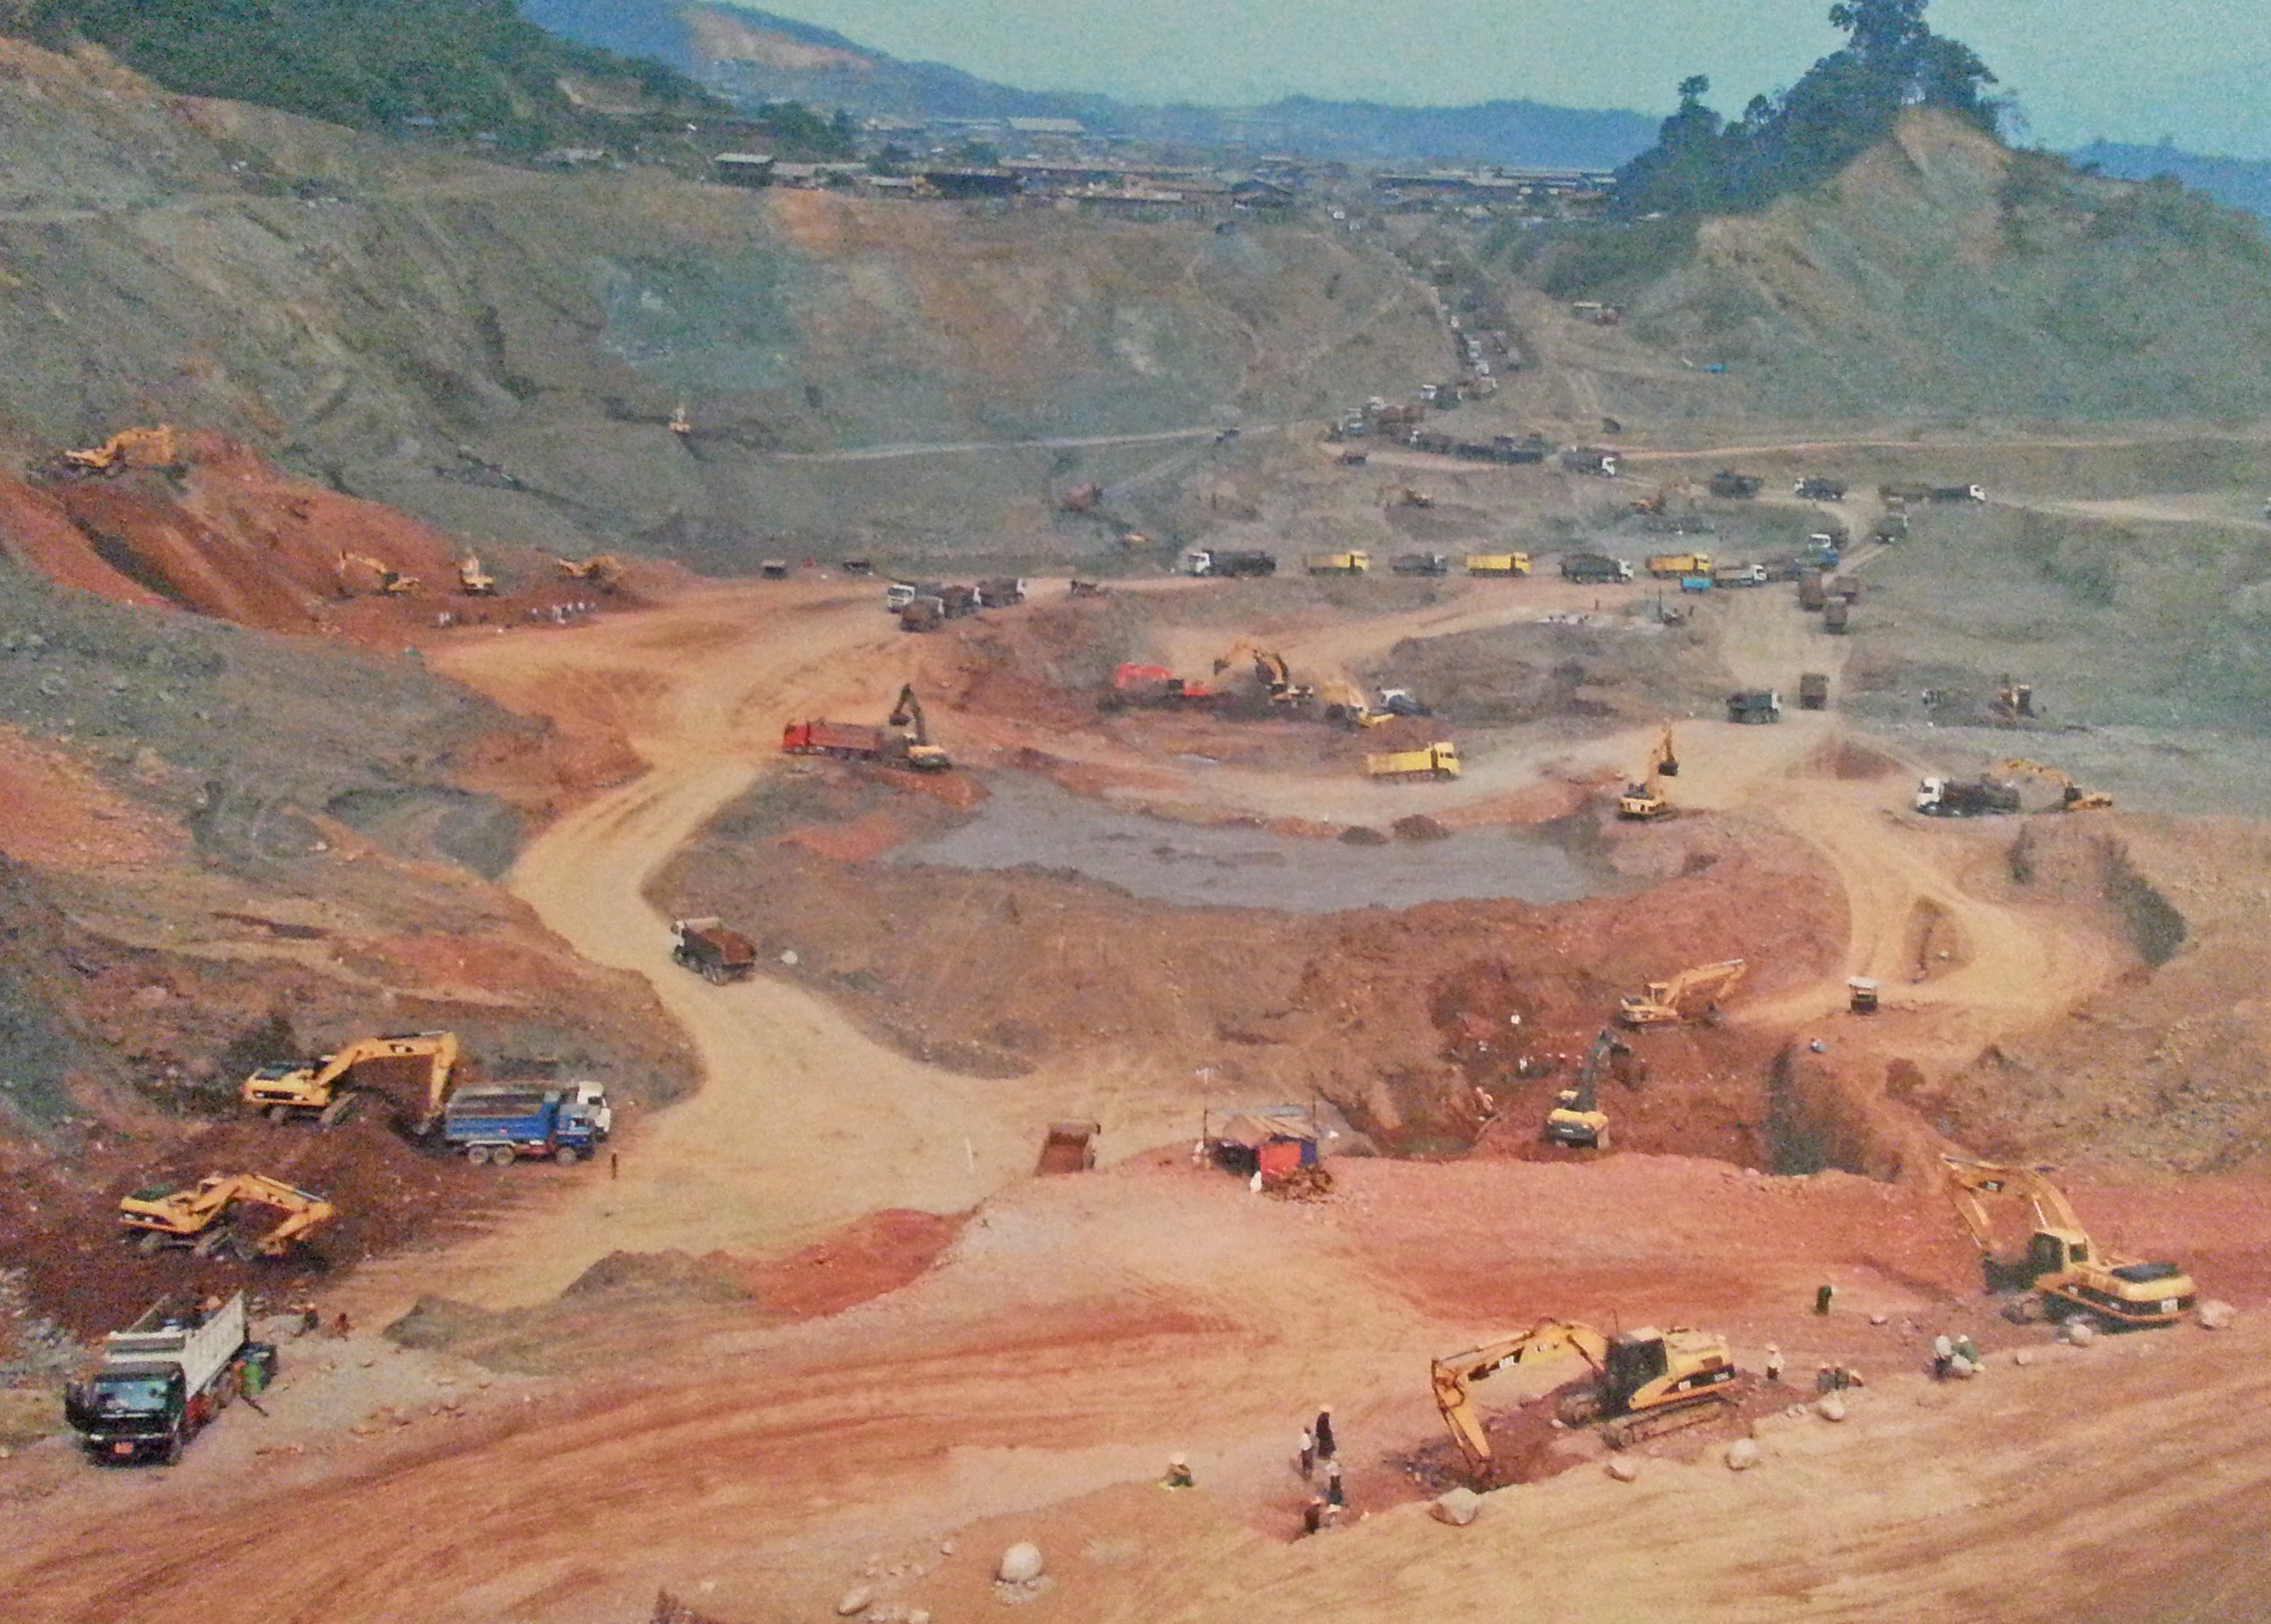 Mining in Myanmar land